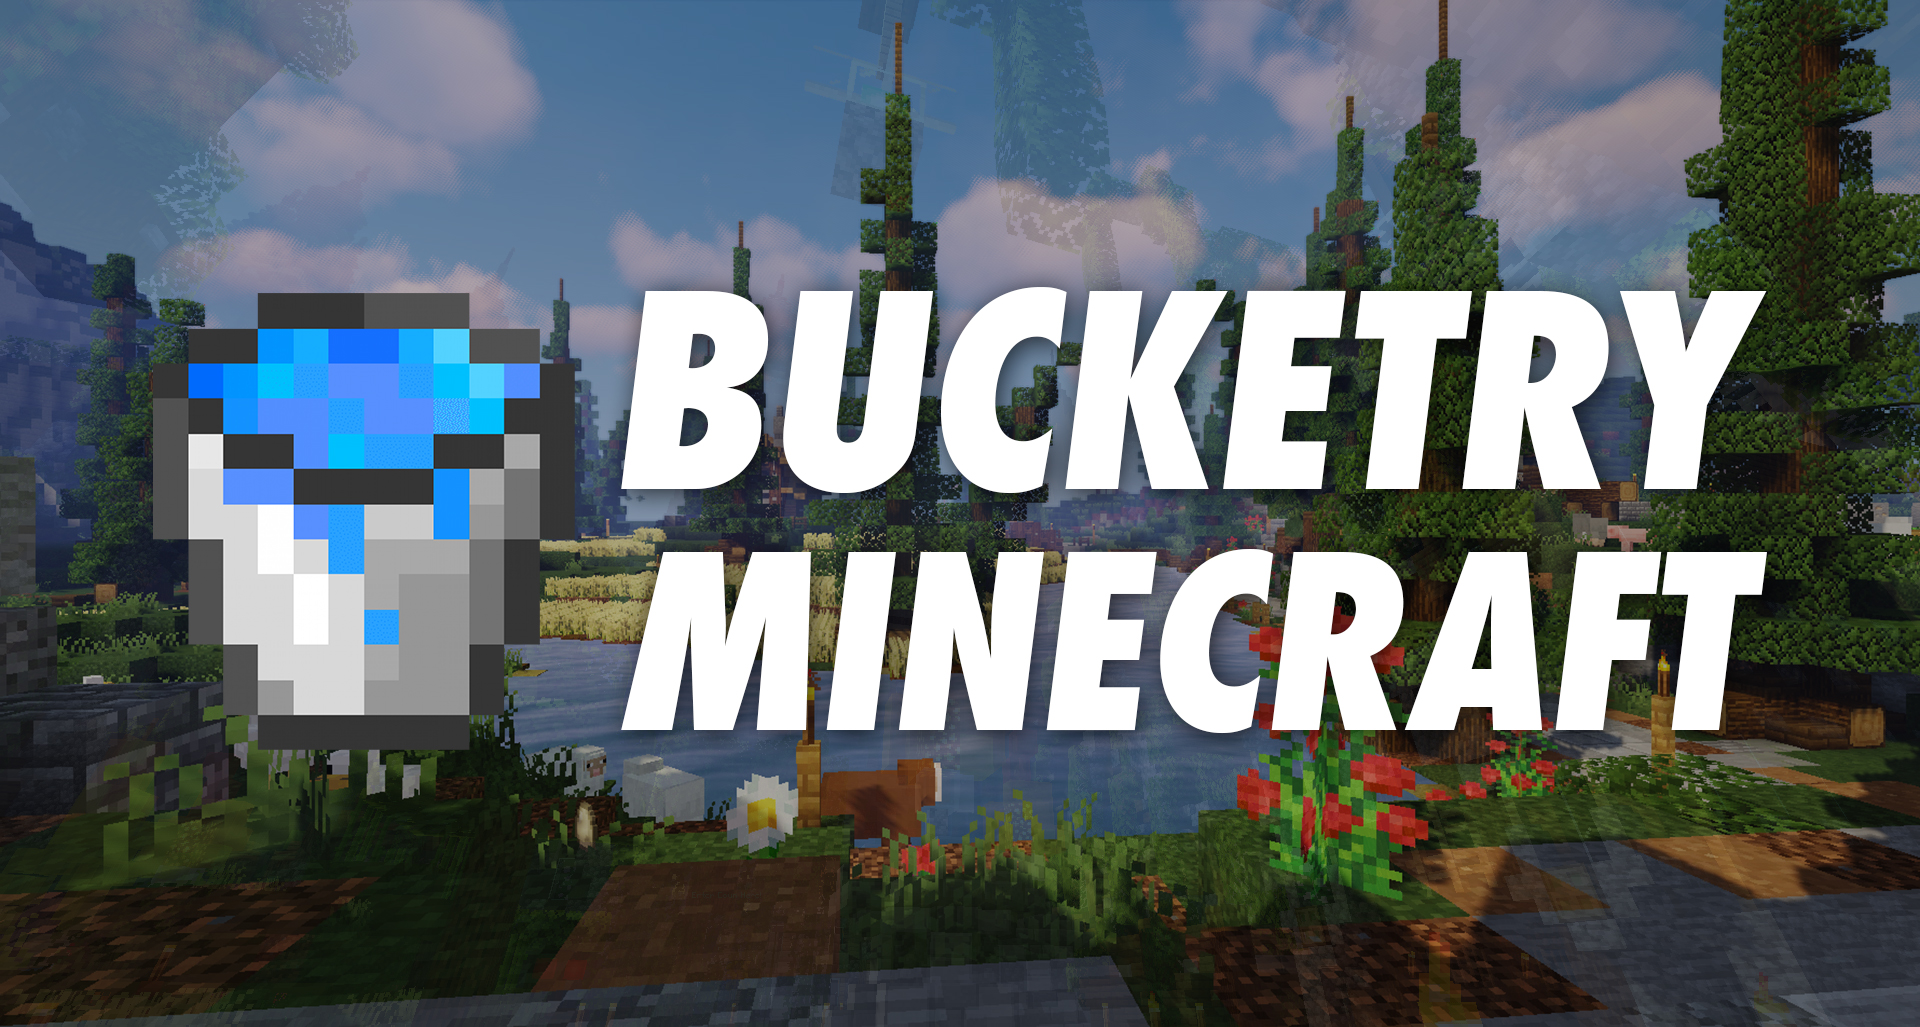 Bucketry Minecraft thumbnail